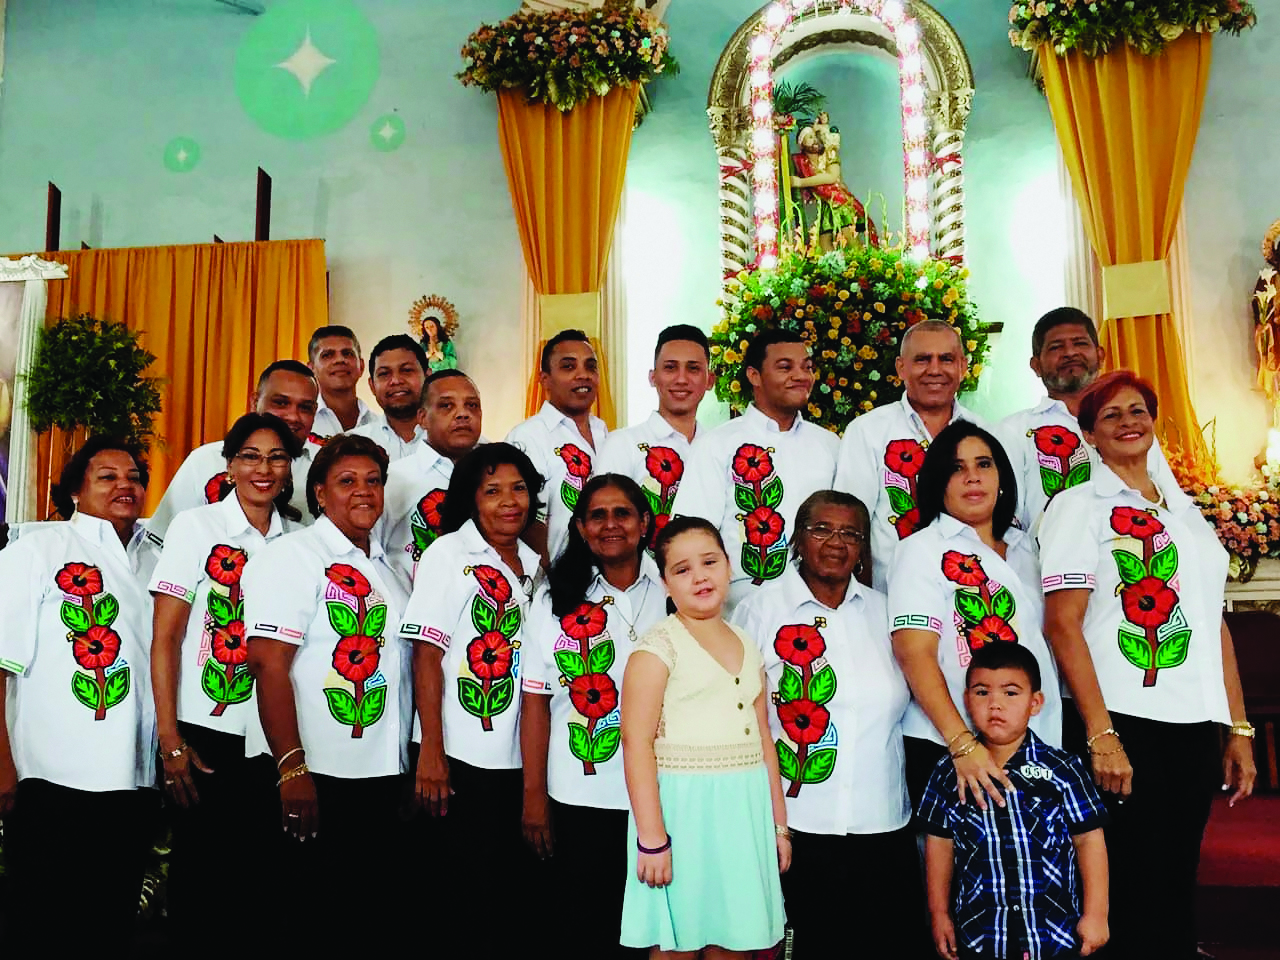 Treinta y seis años de tradición brinda el coro parroquial de San Cristóbal en Chepo